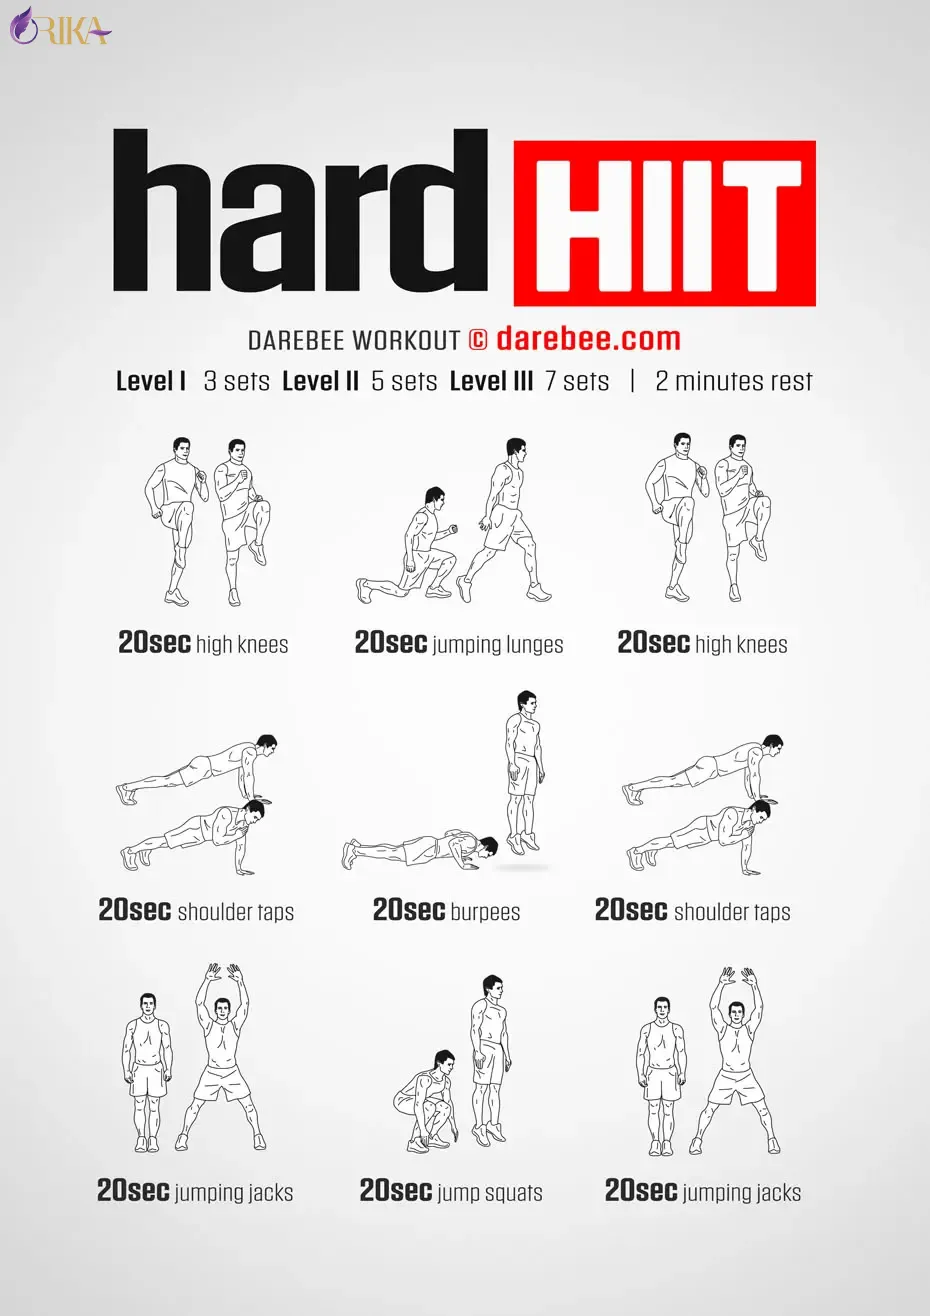 تمرینات HIIT: این تمرینات شامل حرکات کوتاه و پرفشار با ریکاوری کوتاه بین هر حرکت هستند که به افزایش چربی سوزی و تناسب اندام هوازی شما کمک می کنند. 